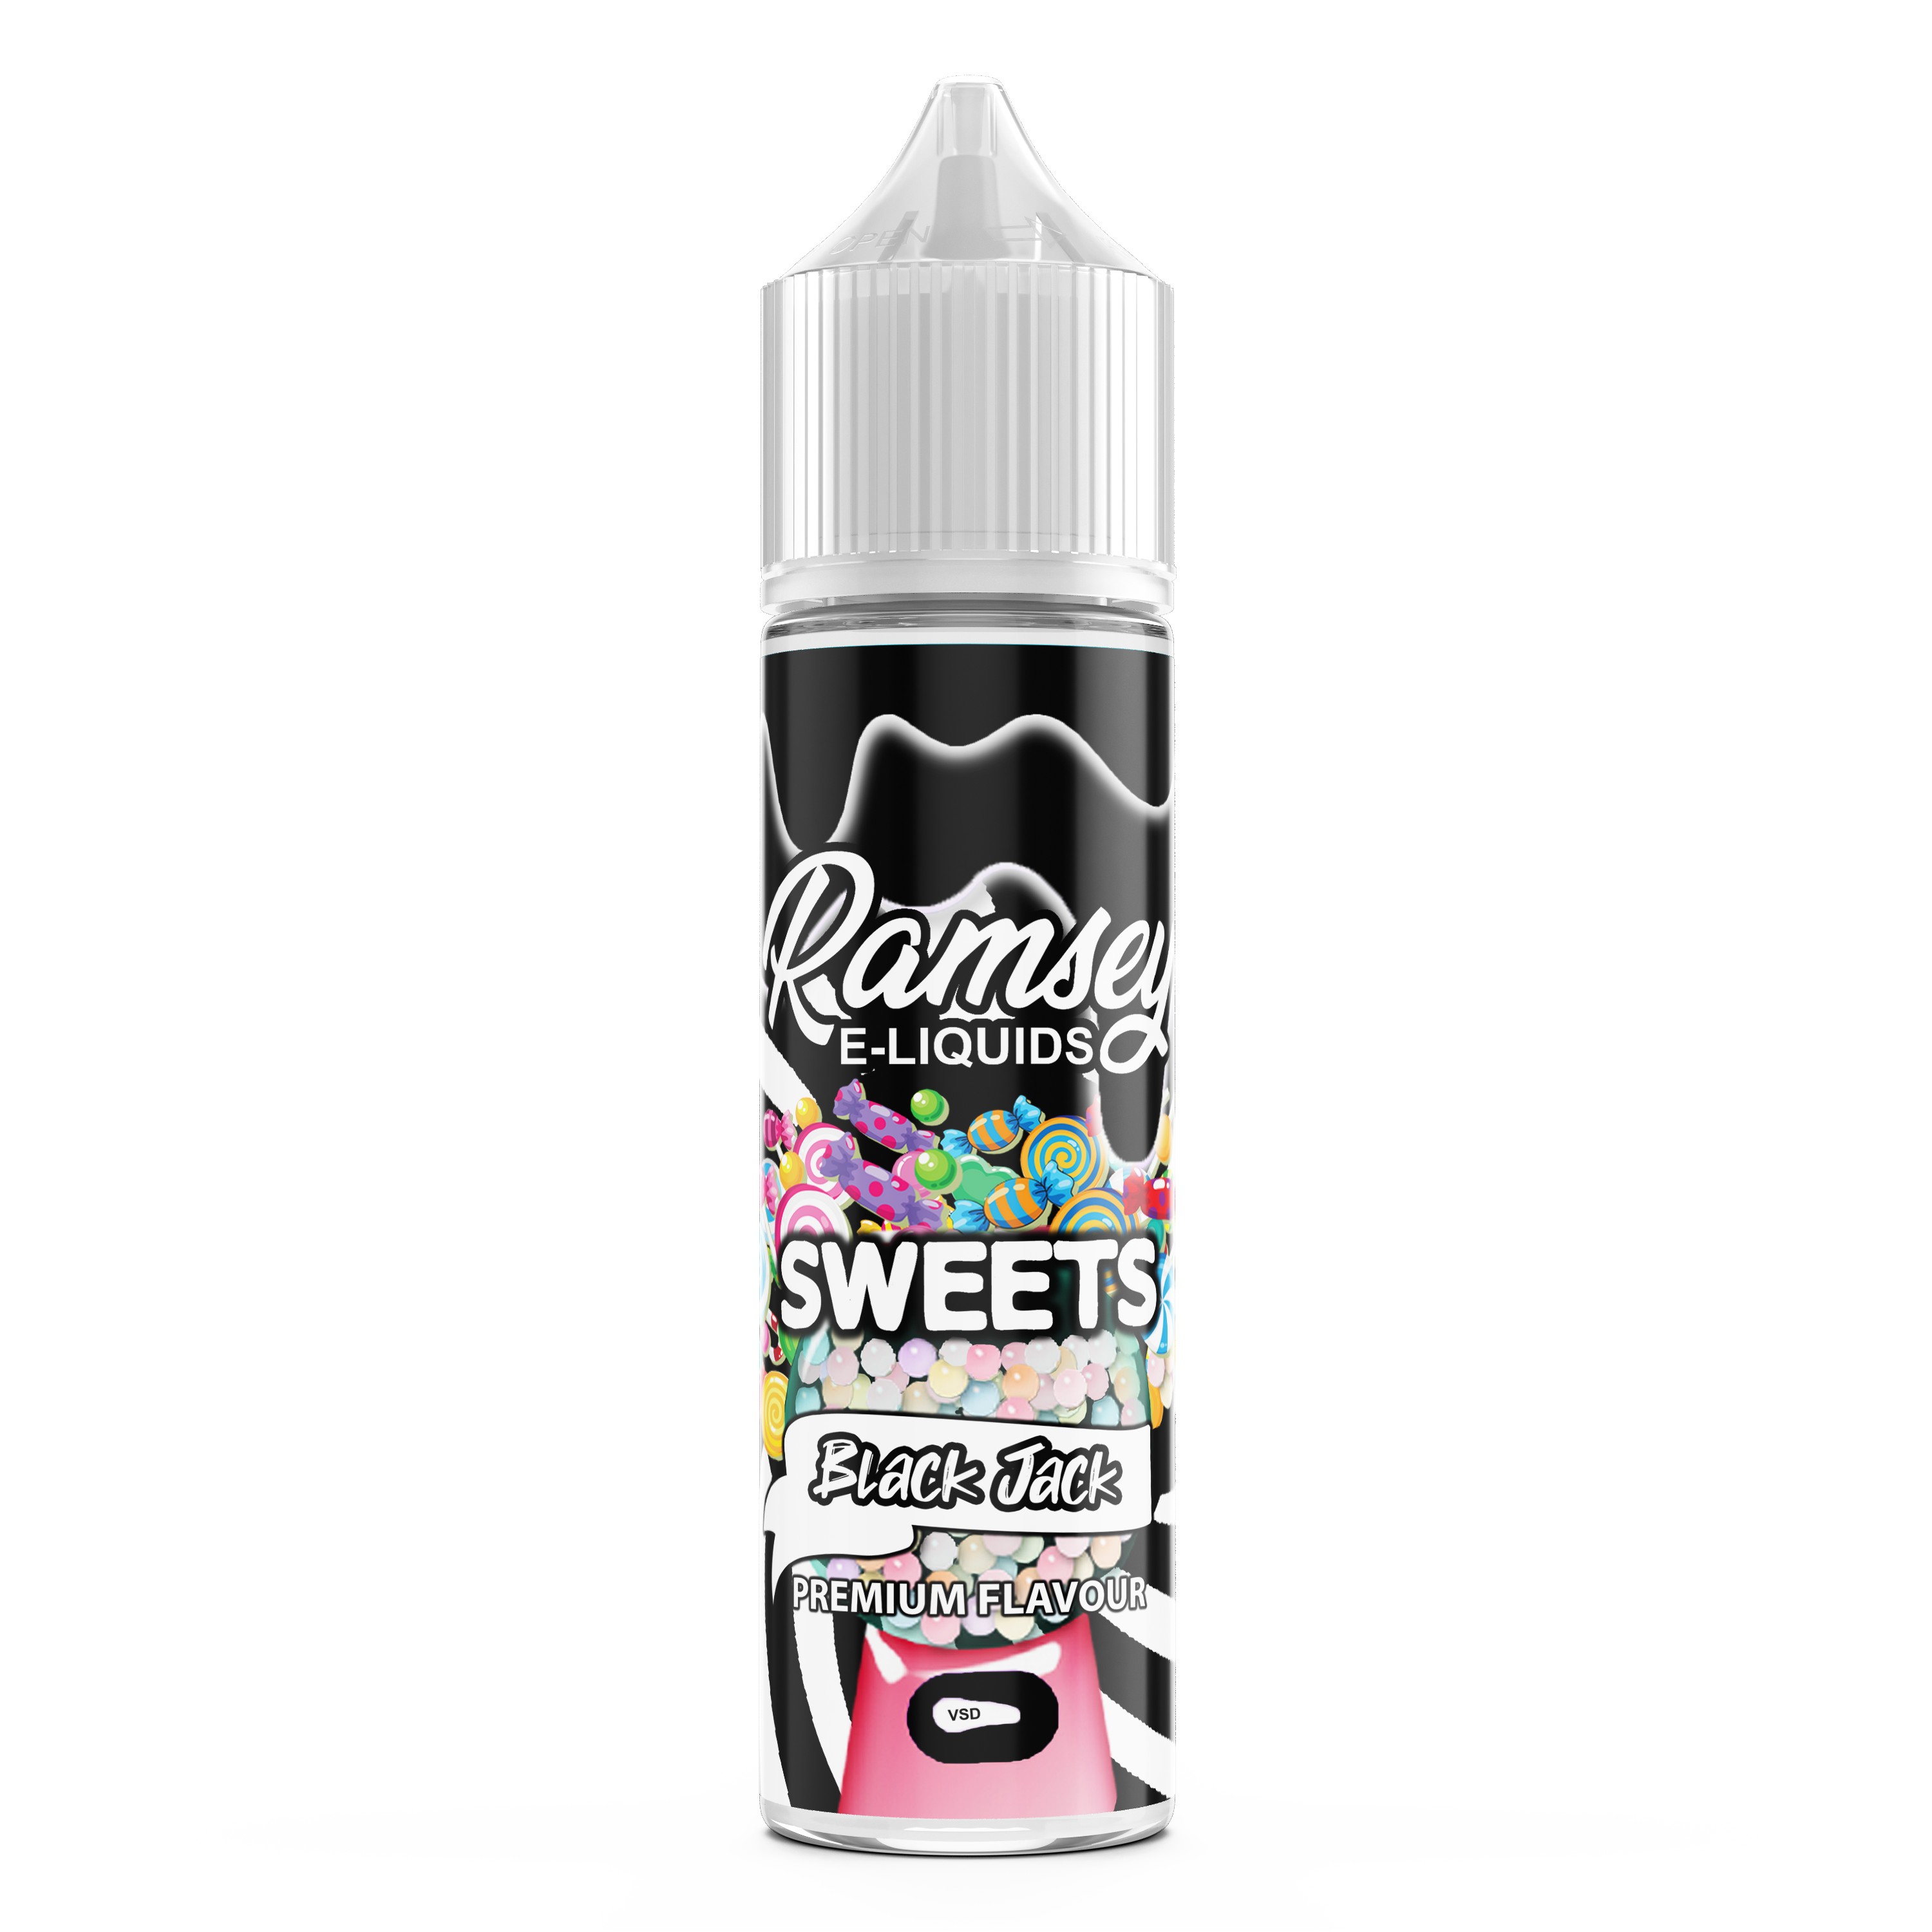 Ramsey E-Liquids Sweets Blackjack 0mg 50ml Short Fill E-Liquid